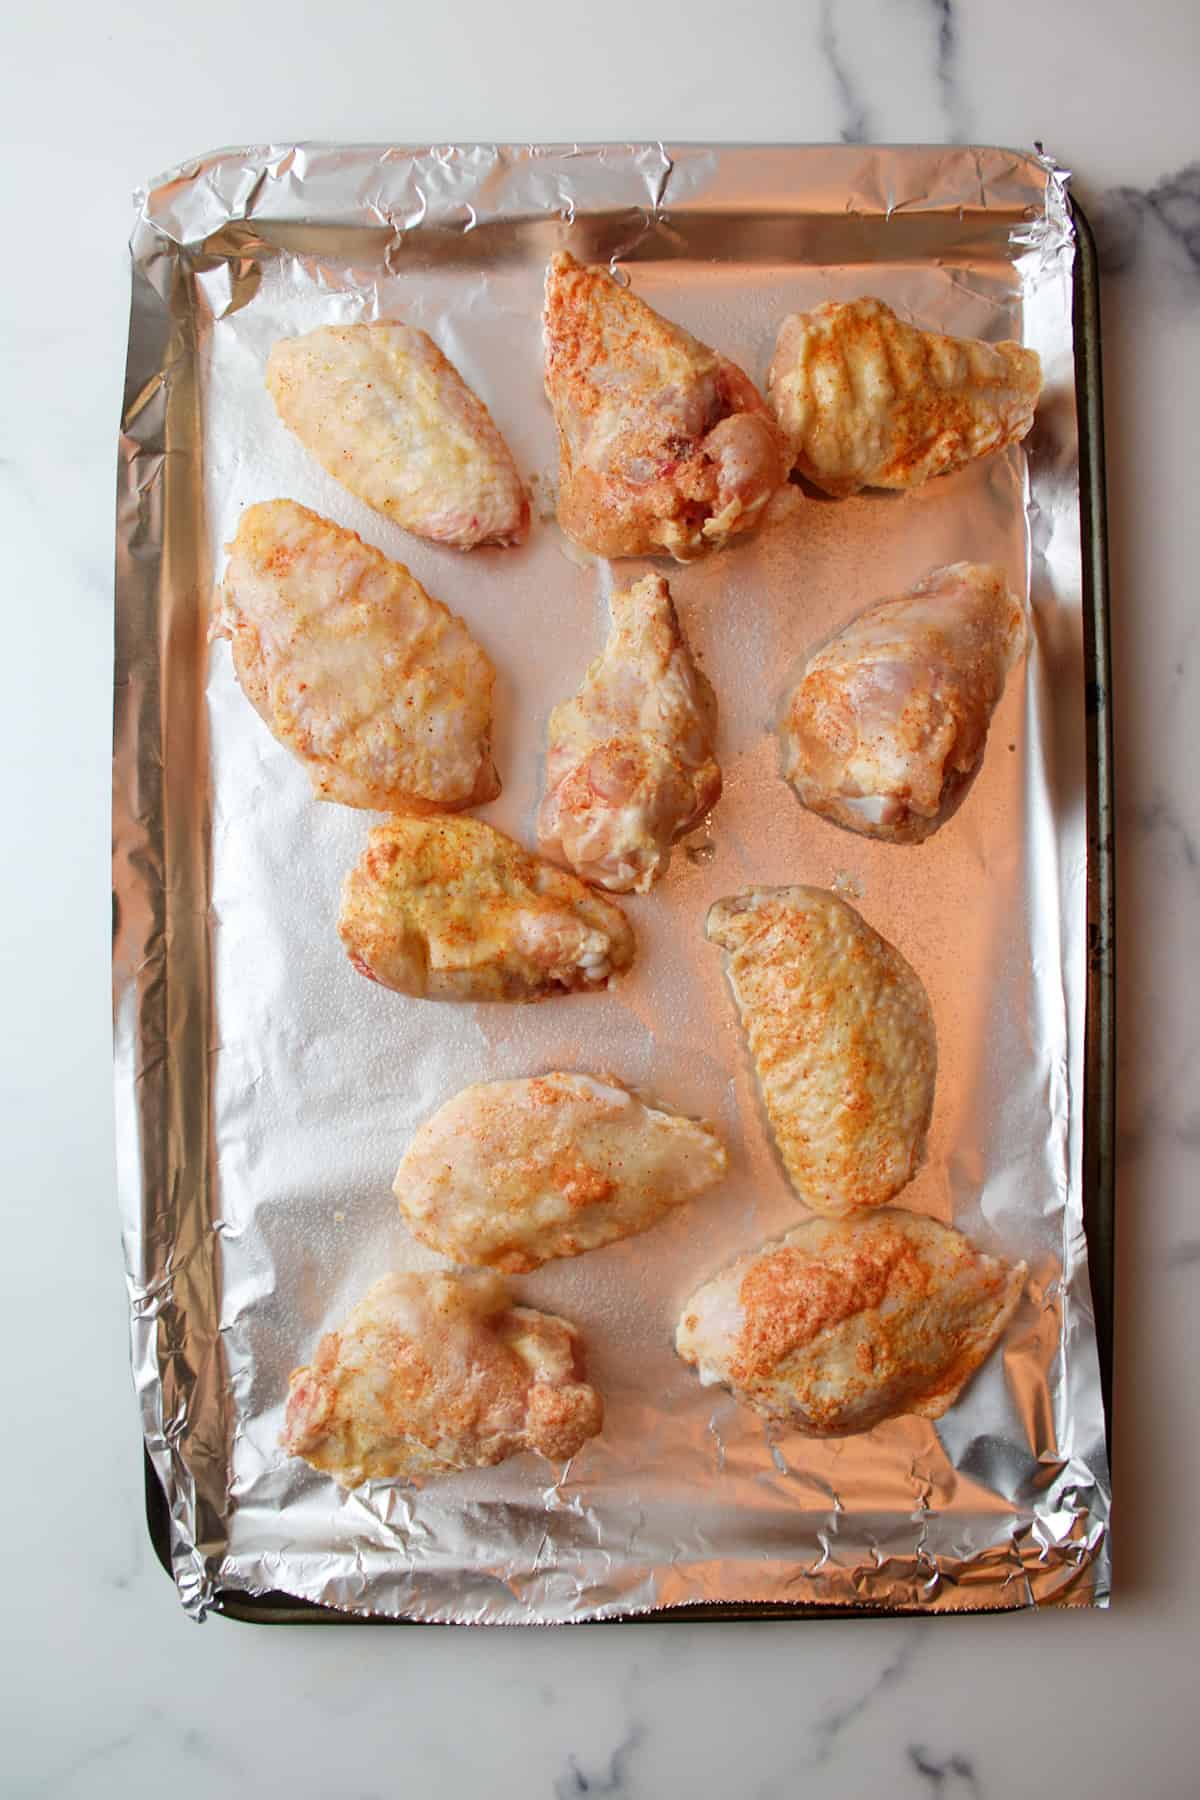 seasoned chicken wings on a foil lined baking sheet